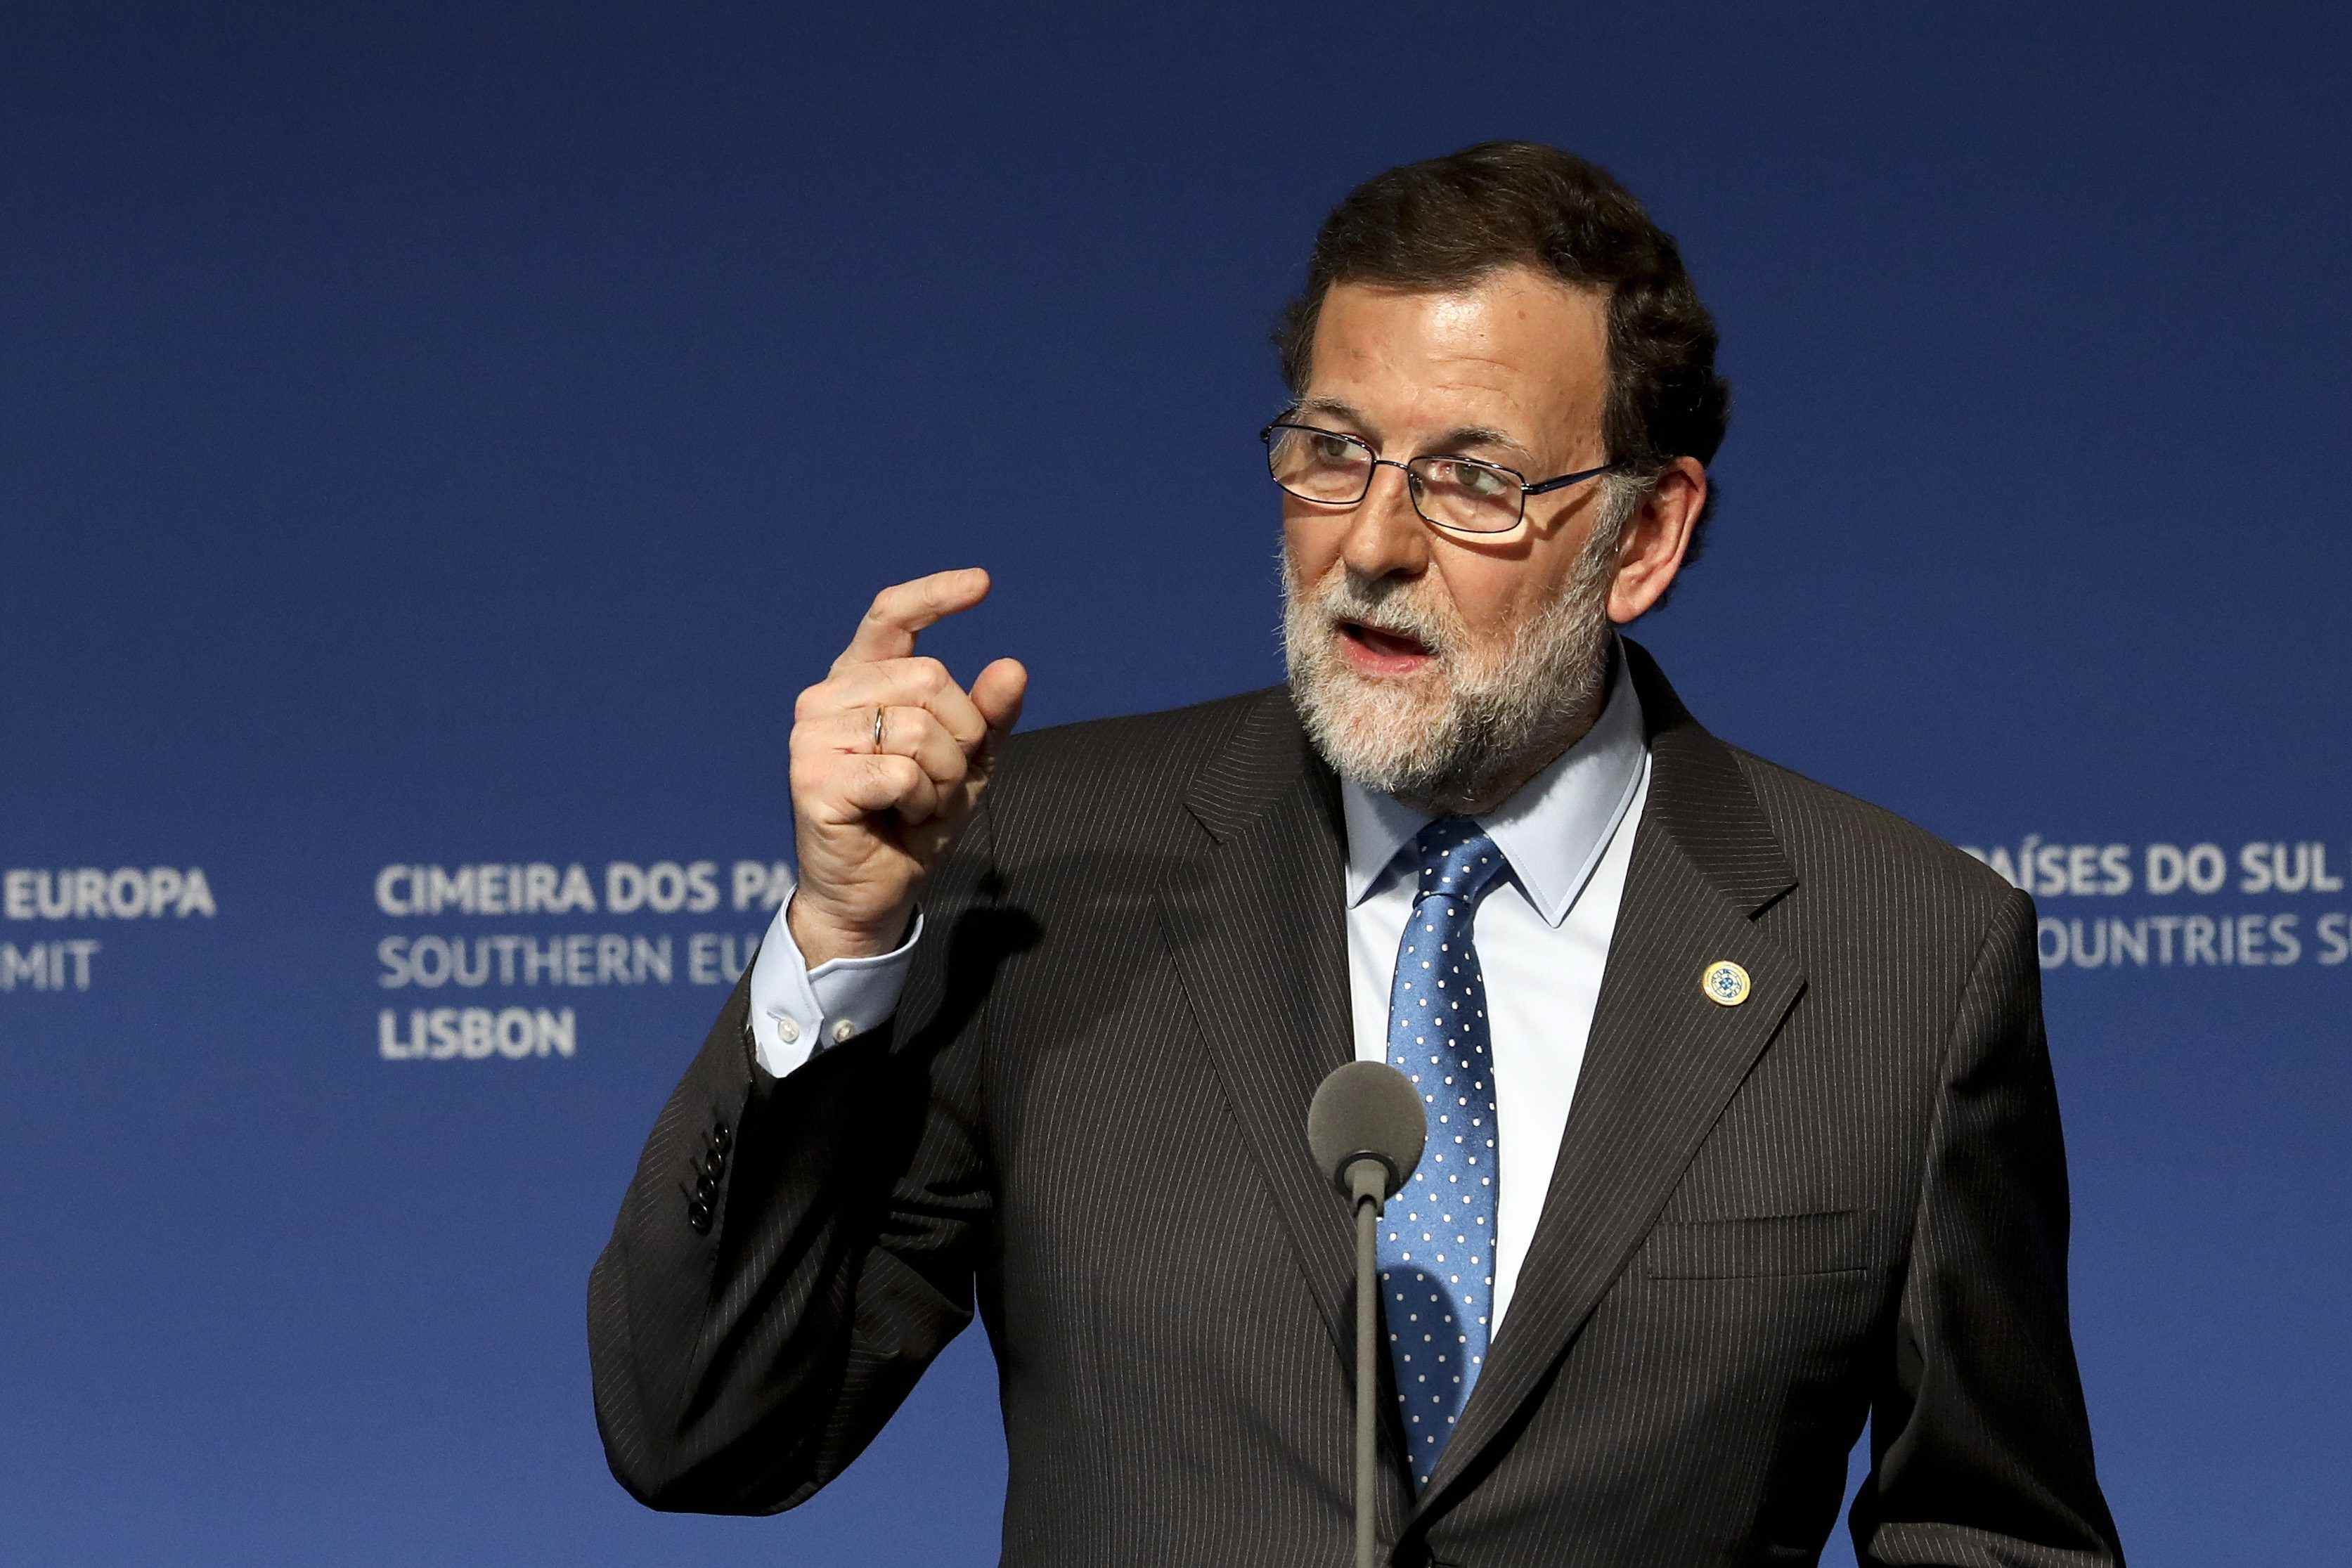 Rajoy respon a Puigdemont (per carta): "És impossible i liquida l'ordre constitucional"